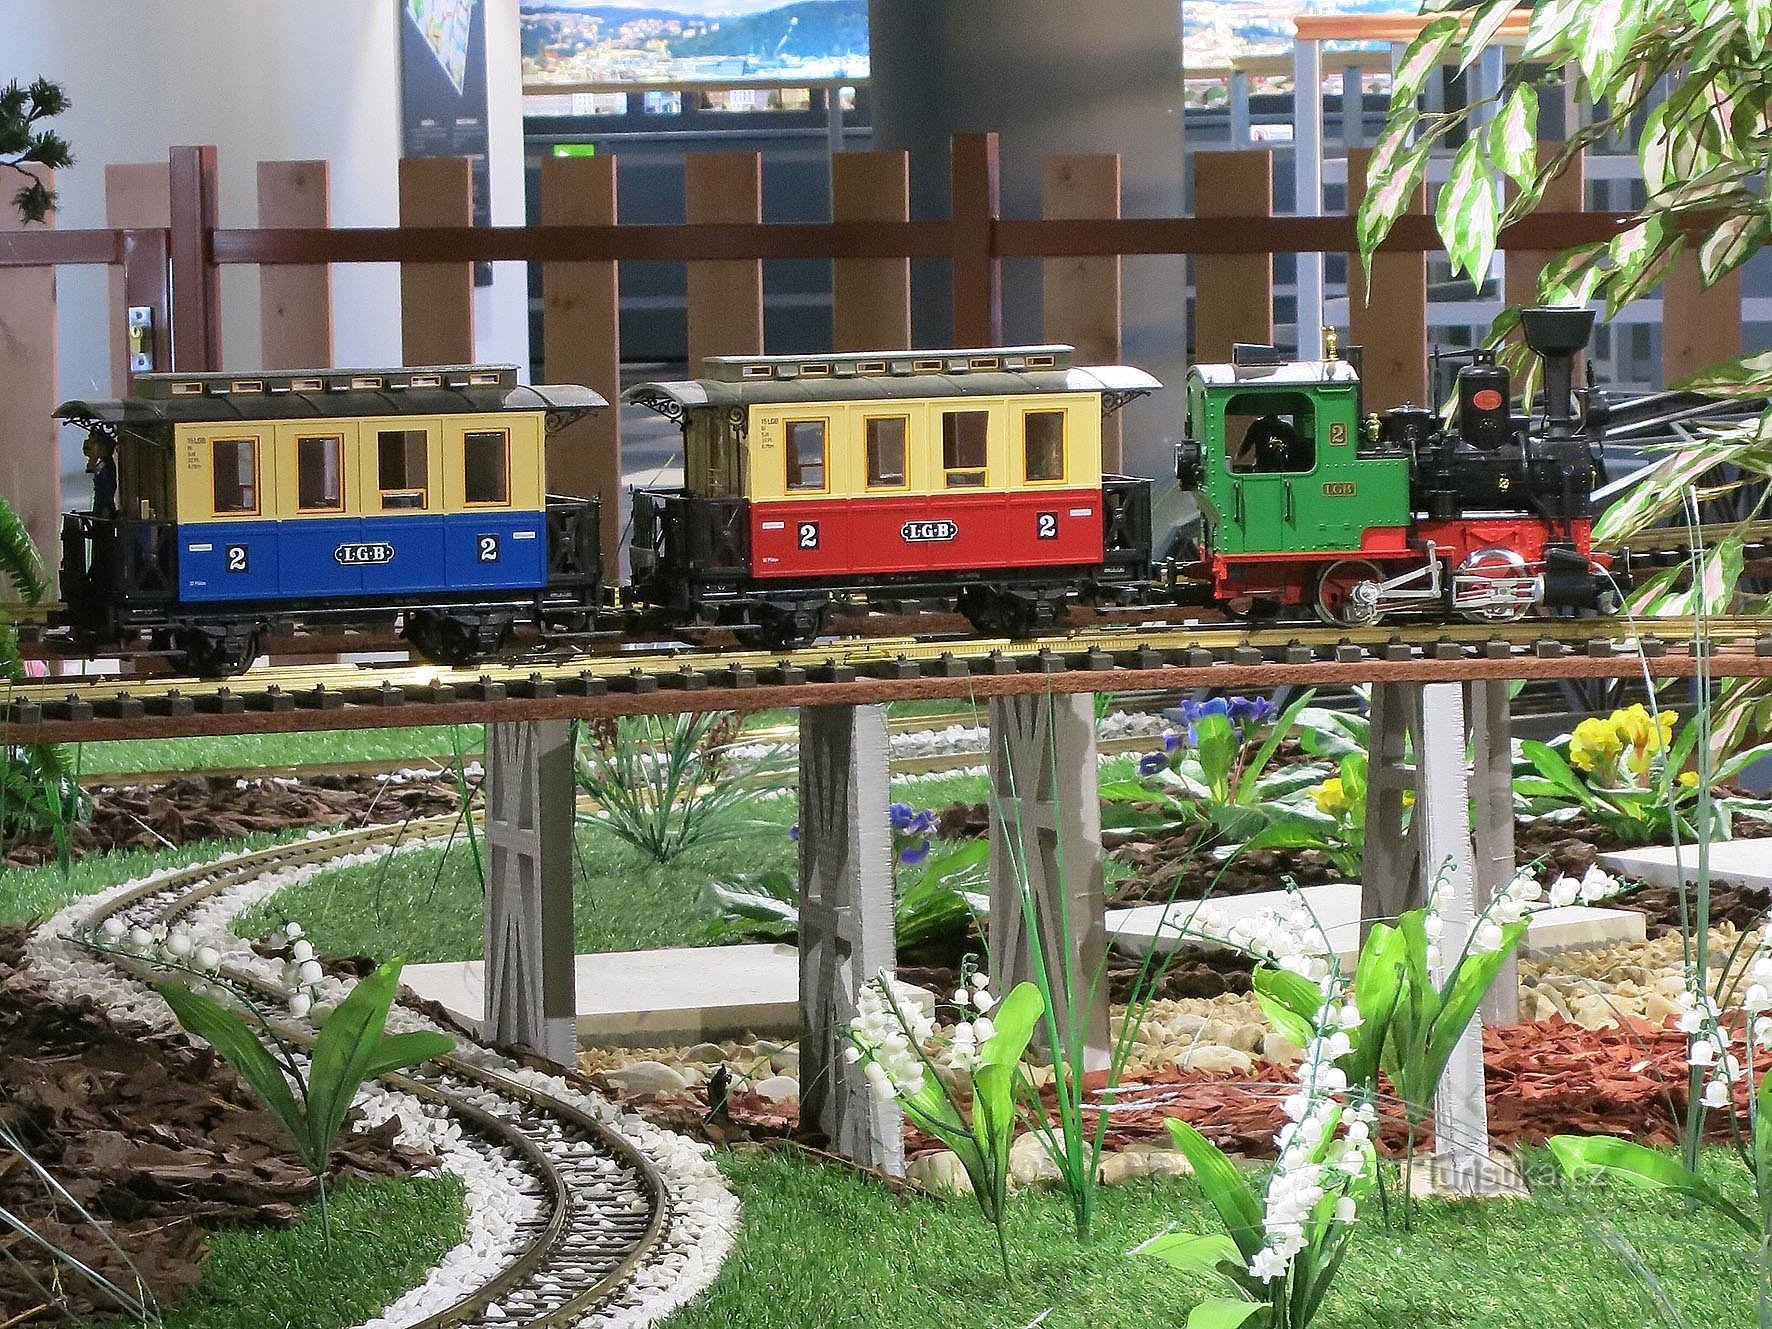 Kuća vlakova i muzej modela željeznice